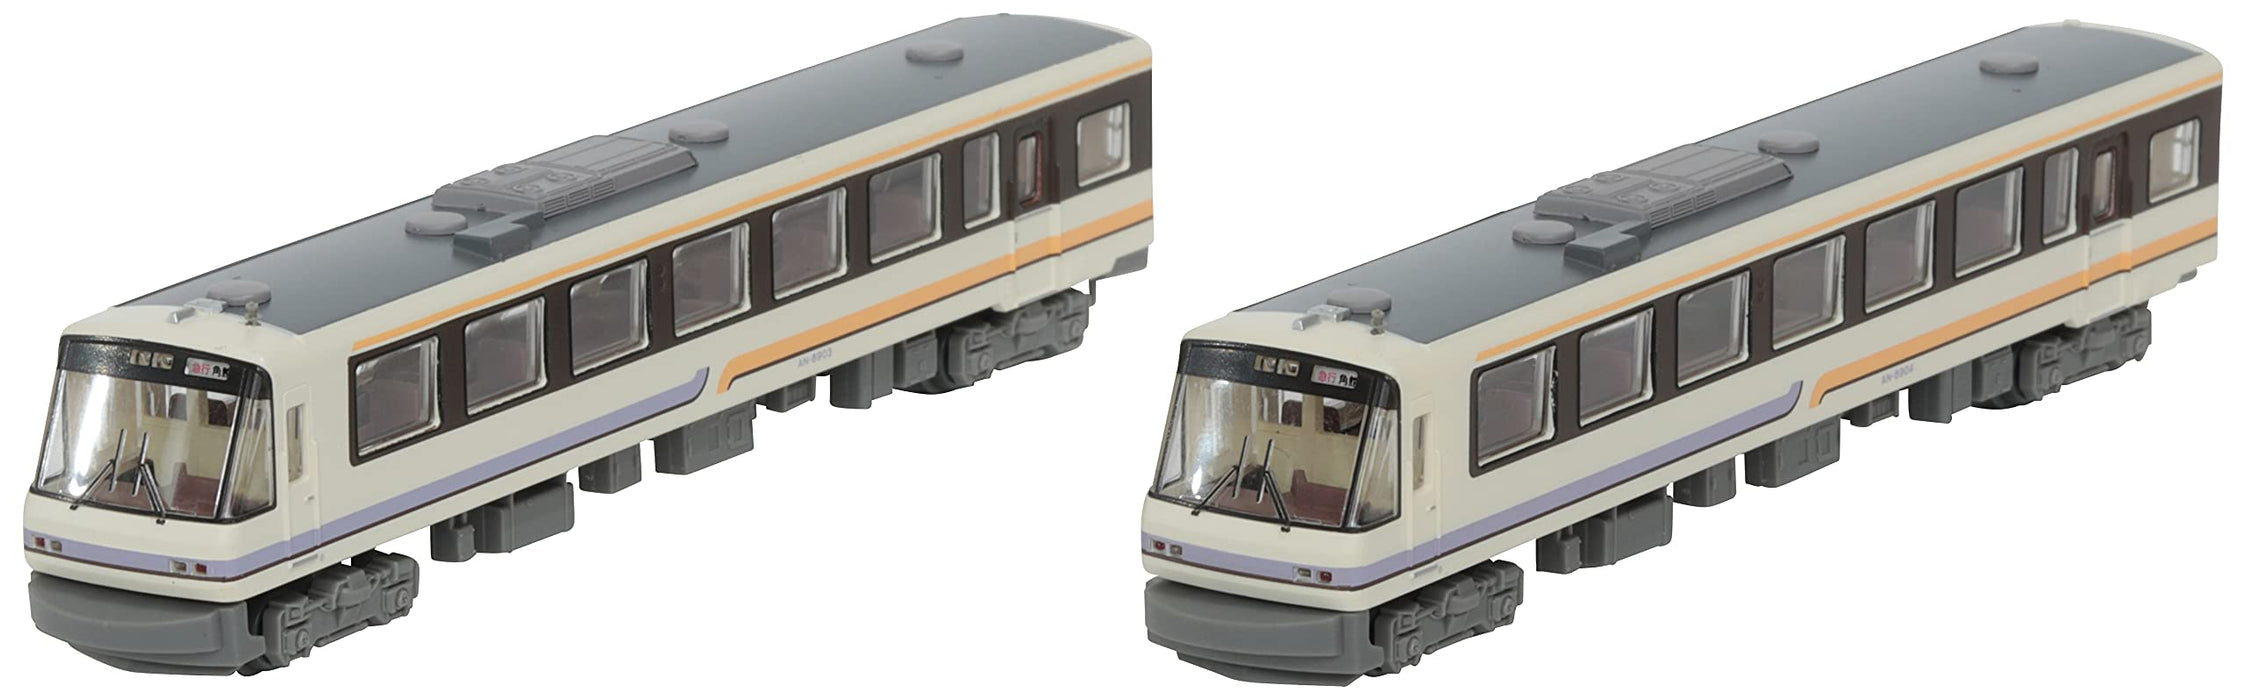 Tomytec Akita Nairiku Jukan Railway An8900 ensemble de 2 voitures fournitures de Diorama couleur originale